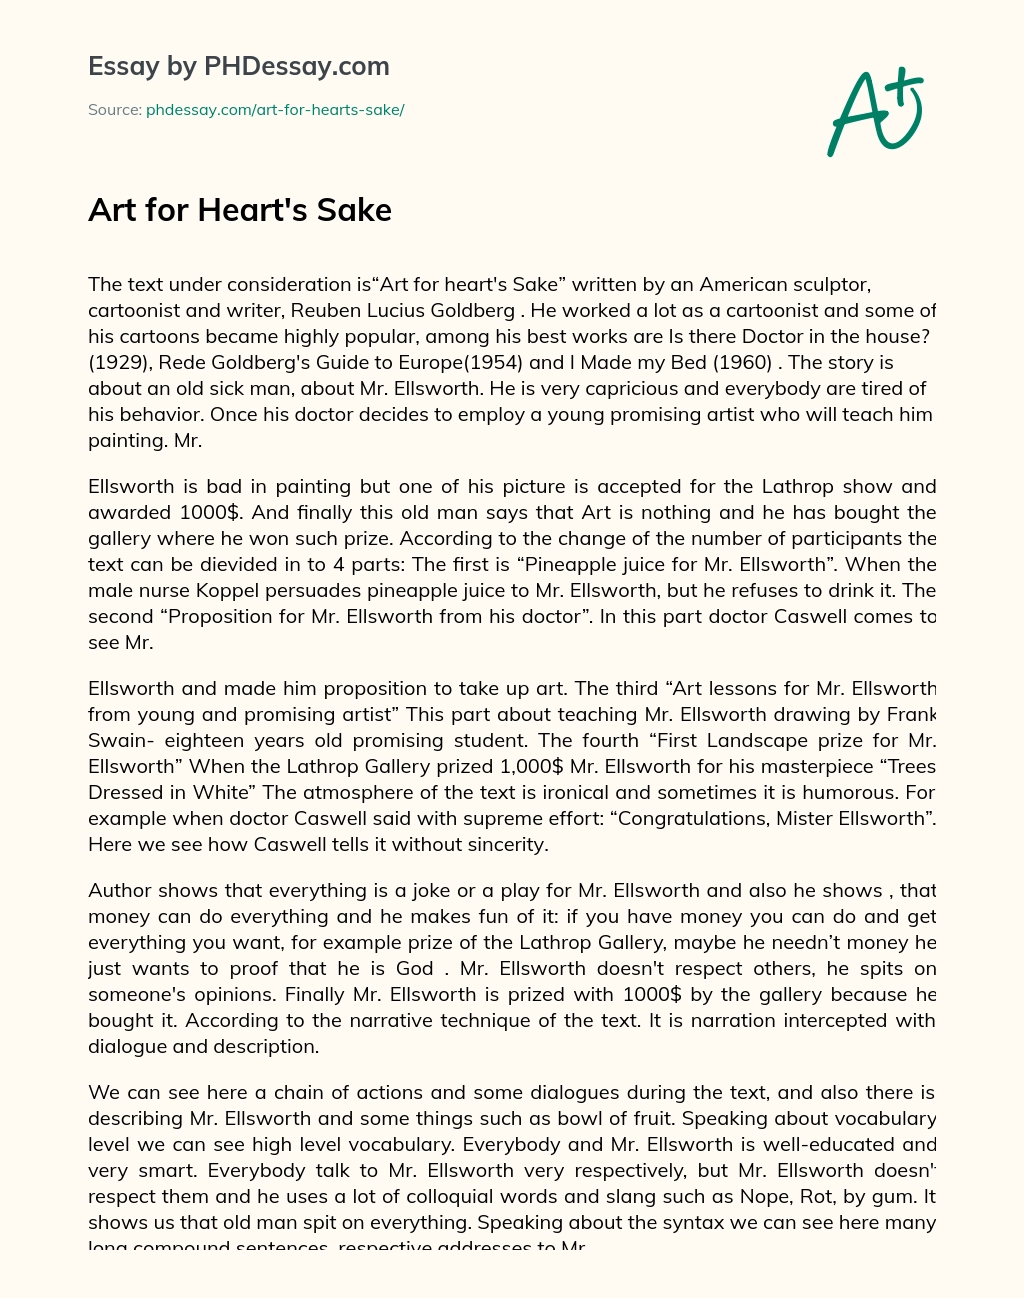 Art for Heart’s Sake essay